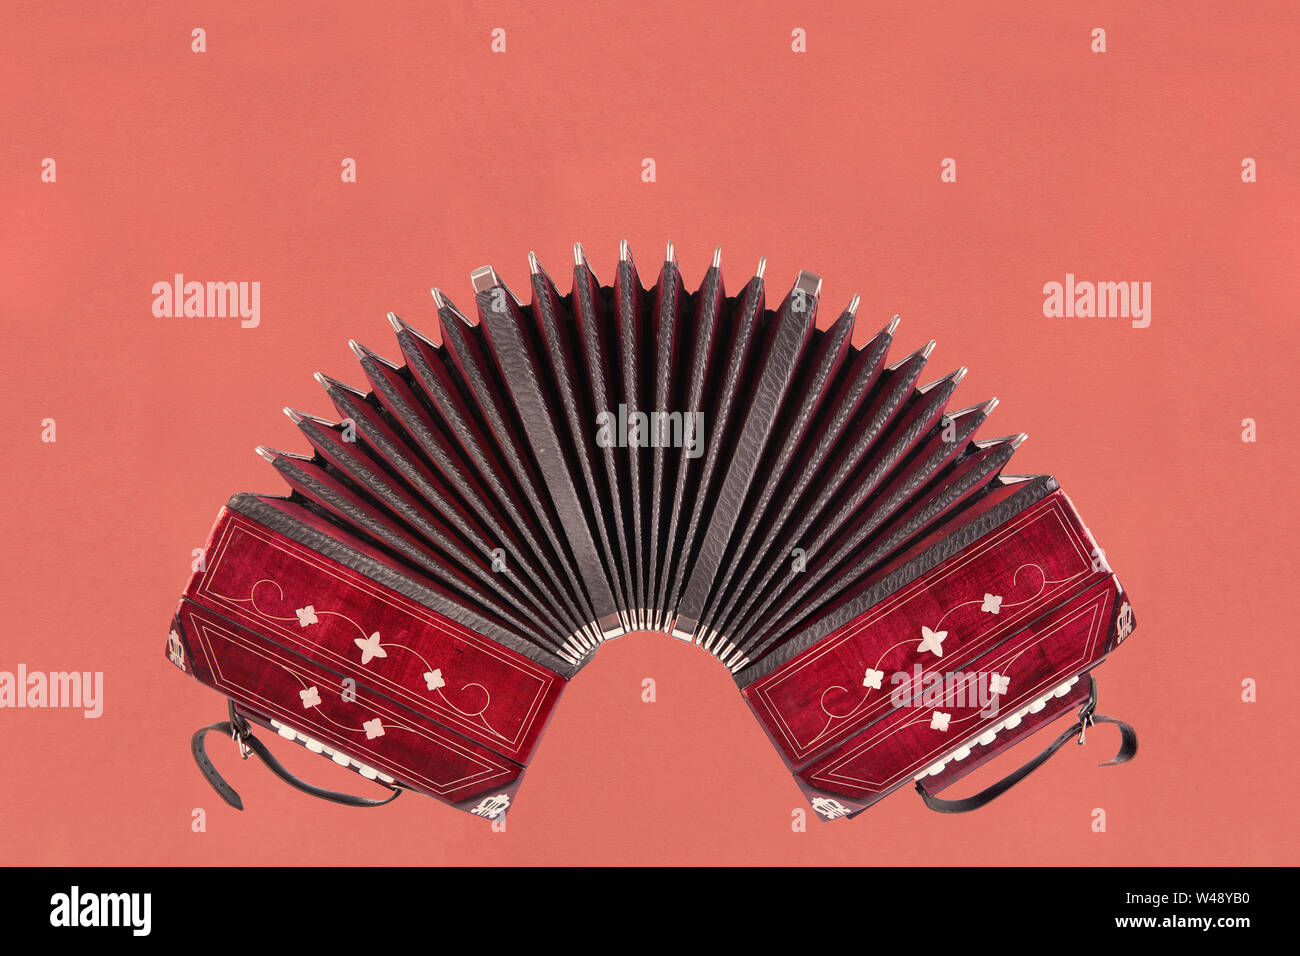 Tango bandonéon, instrument, vue avant l'oin papier fond rose avec copy-space Banque D'Images